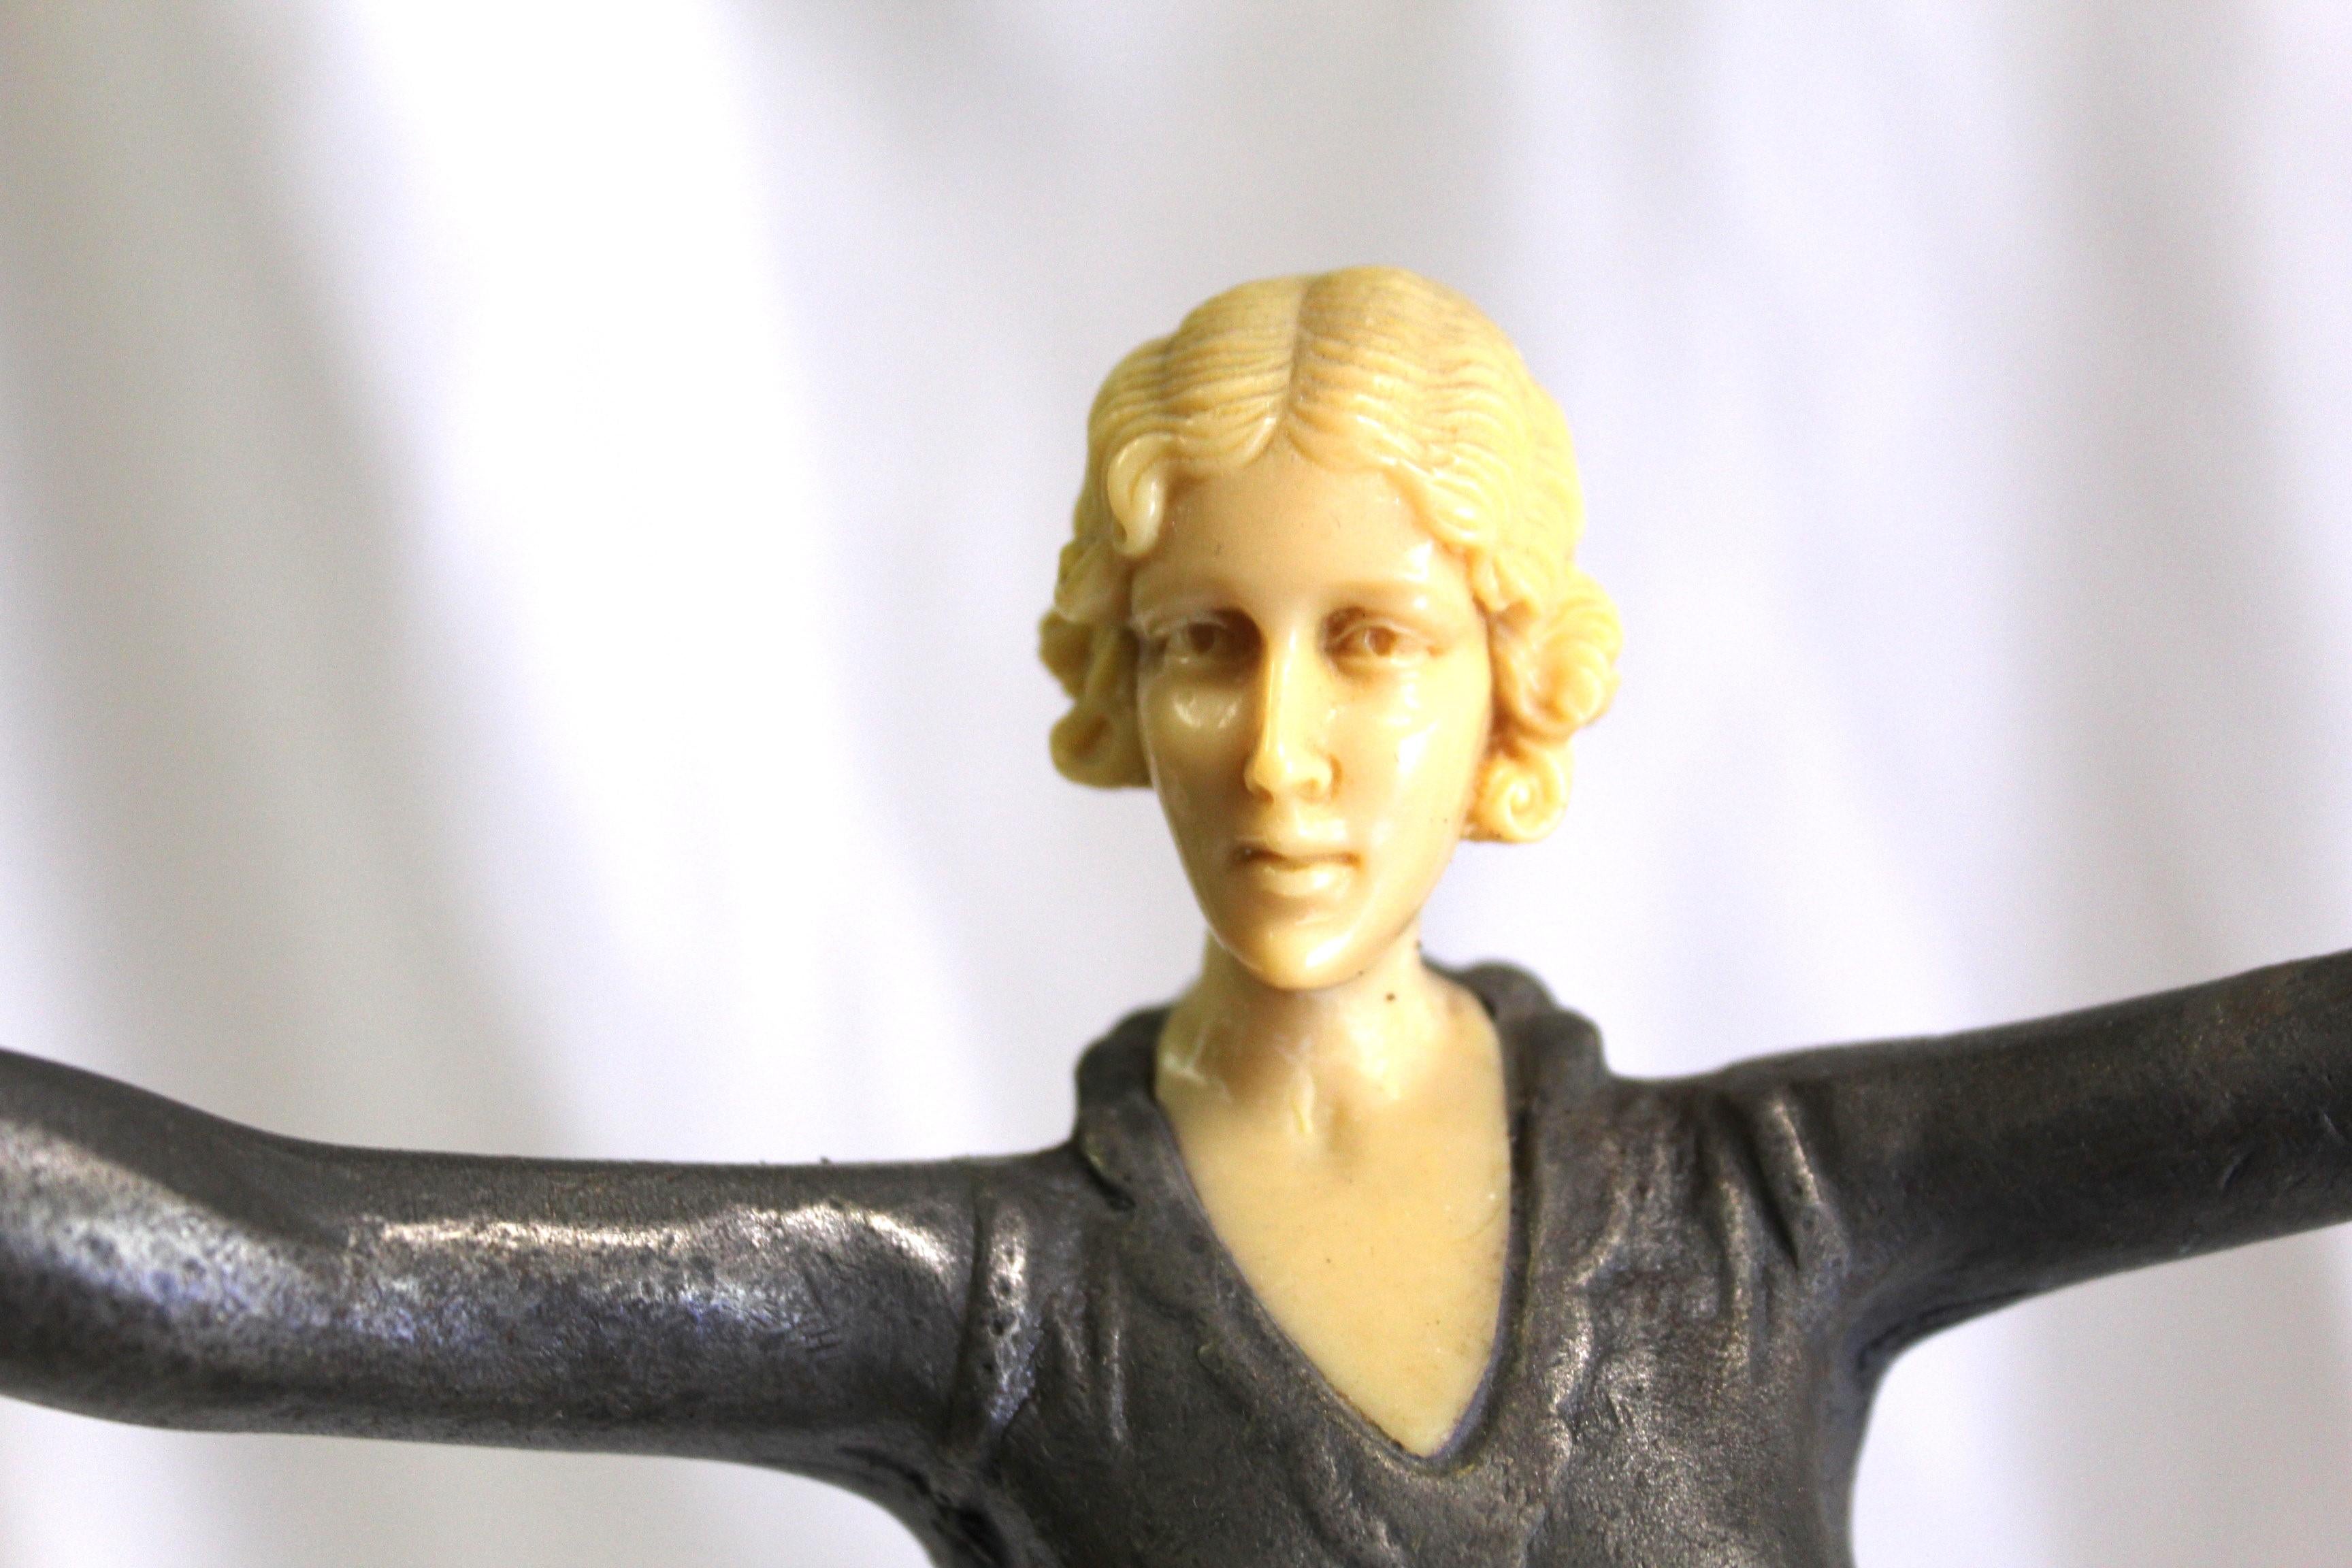 Eine elegante Pose einer Frauenfigur mit ausgestreckten Armen. Casting ist Metall mit Bronze-Finish, insgesamt ht ist bei 14